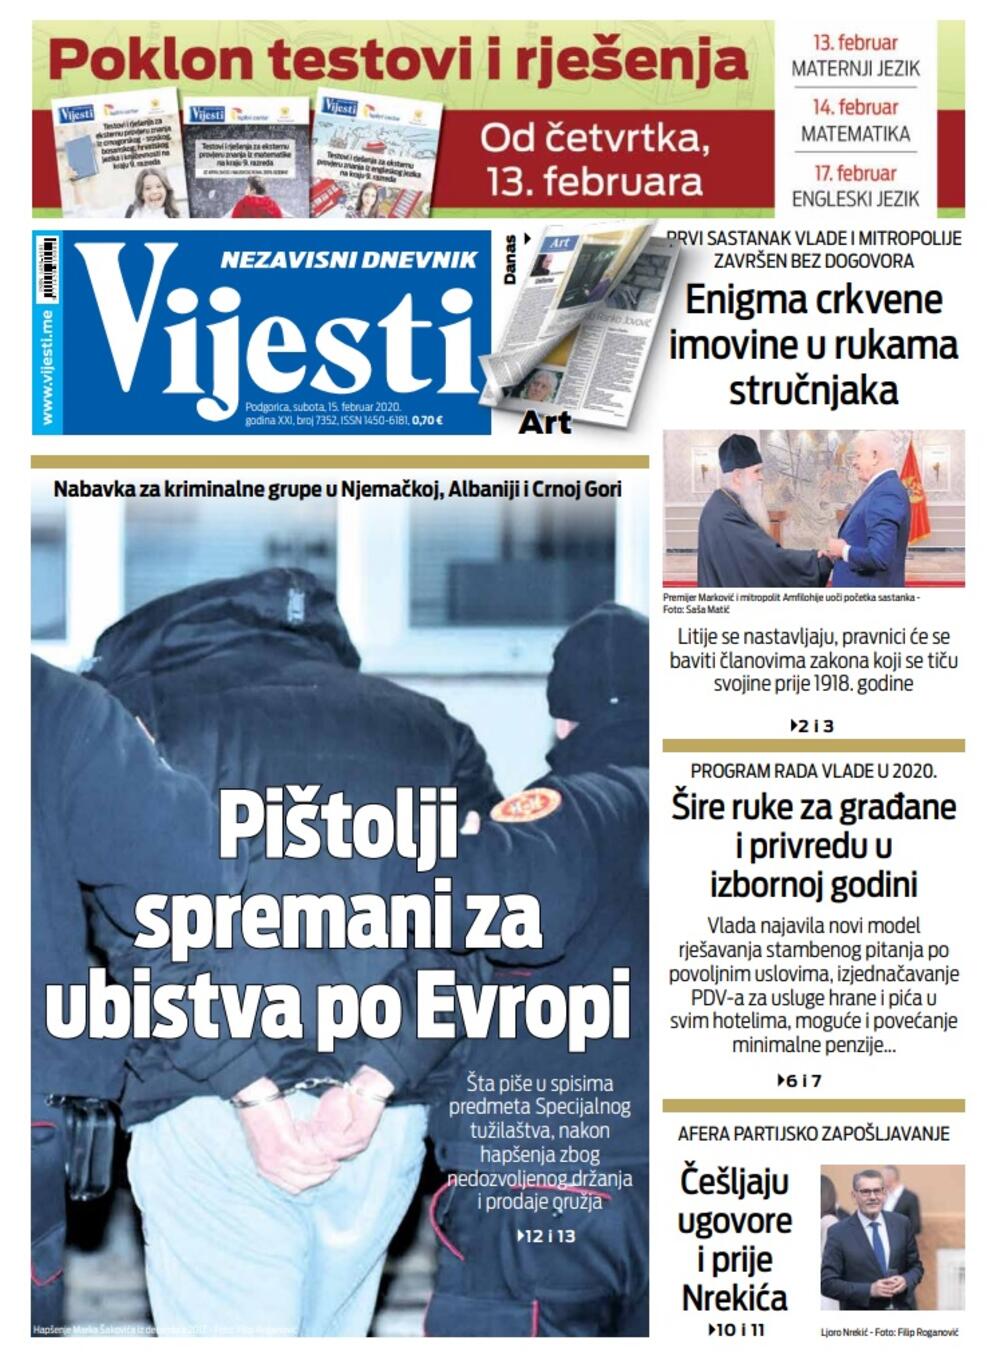 Naslovna strana "Vijesti" za subotu 15. februar 2020. godine, Foto: "Vijesti"